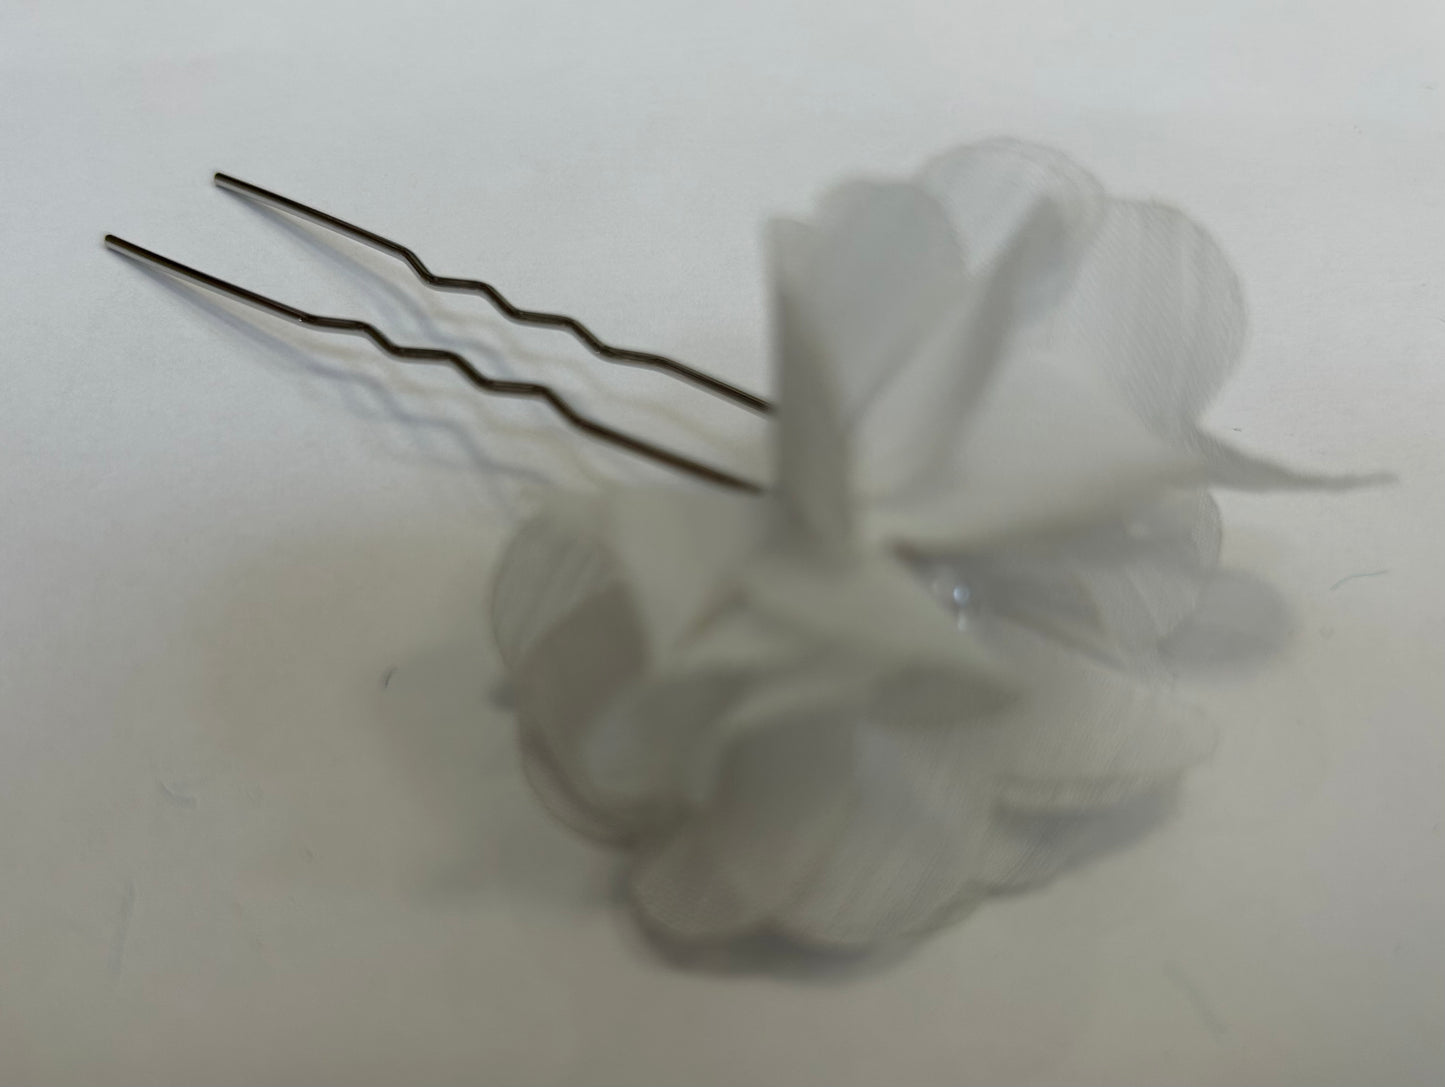 Beautiful Bowtique White Flower Hair Pins